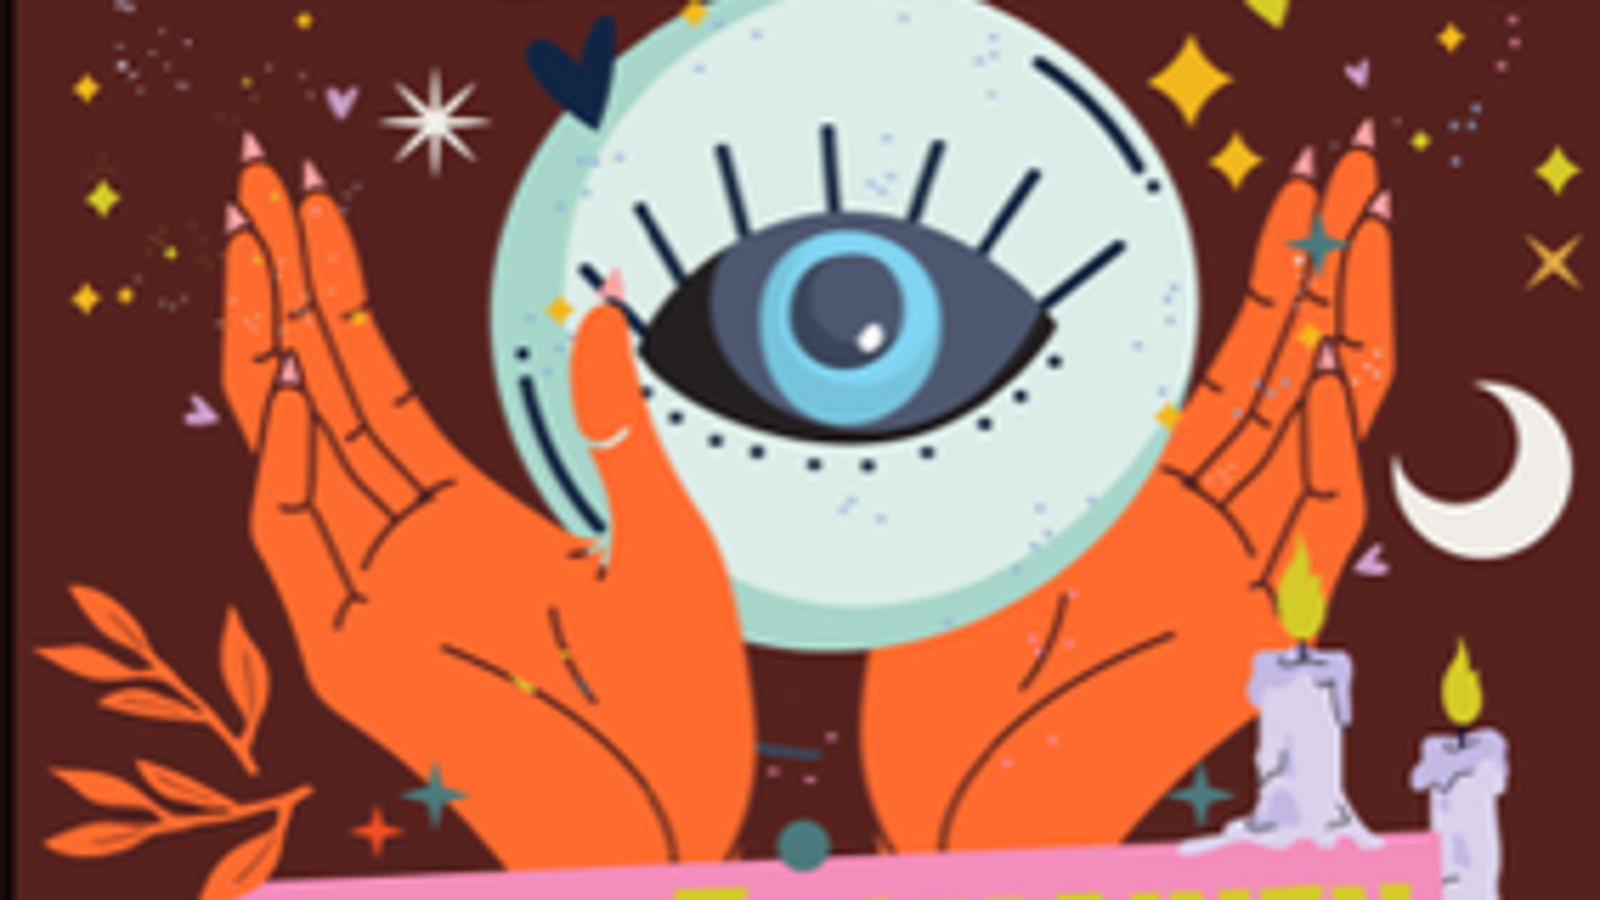 Kuvassa on ruskealla pohjalla piirroskuva, jossa on oranssit kädet levitetyttynä ja välissä on vaalea lasikuula, jossa on silmä.